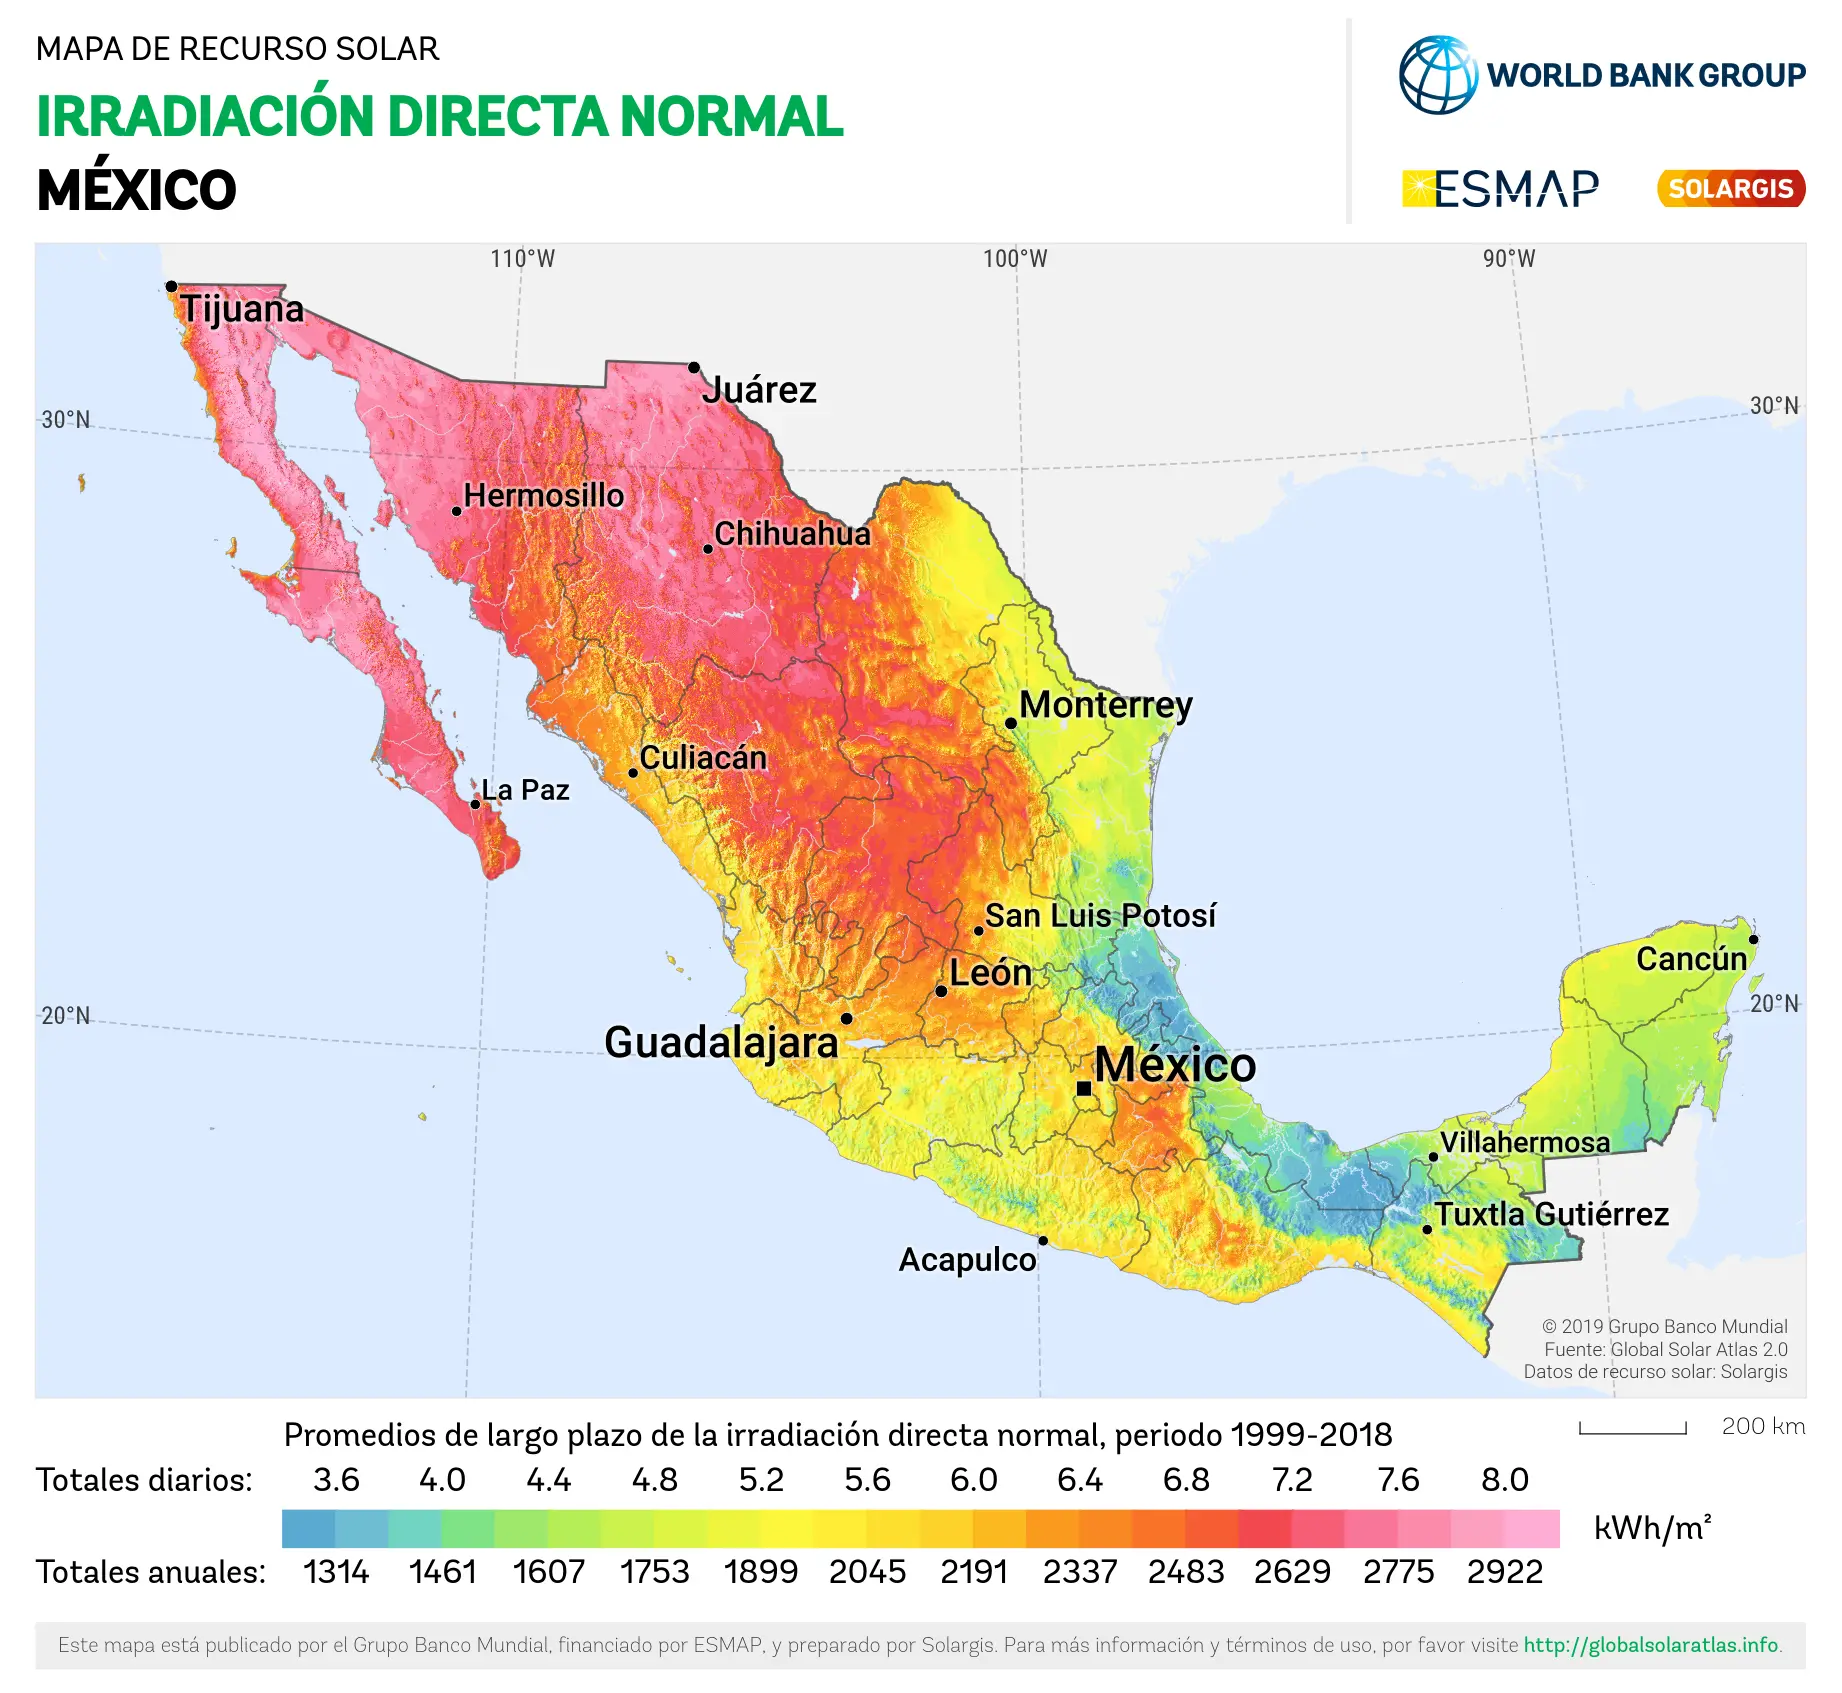 atlas de energia solar mexico - Cómo se utiliza la energía solar en México